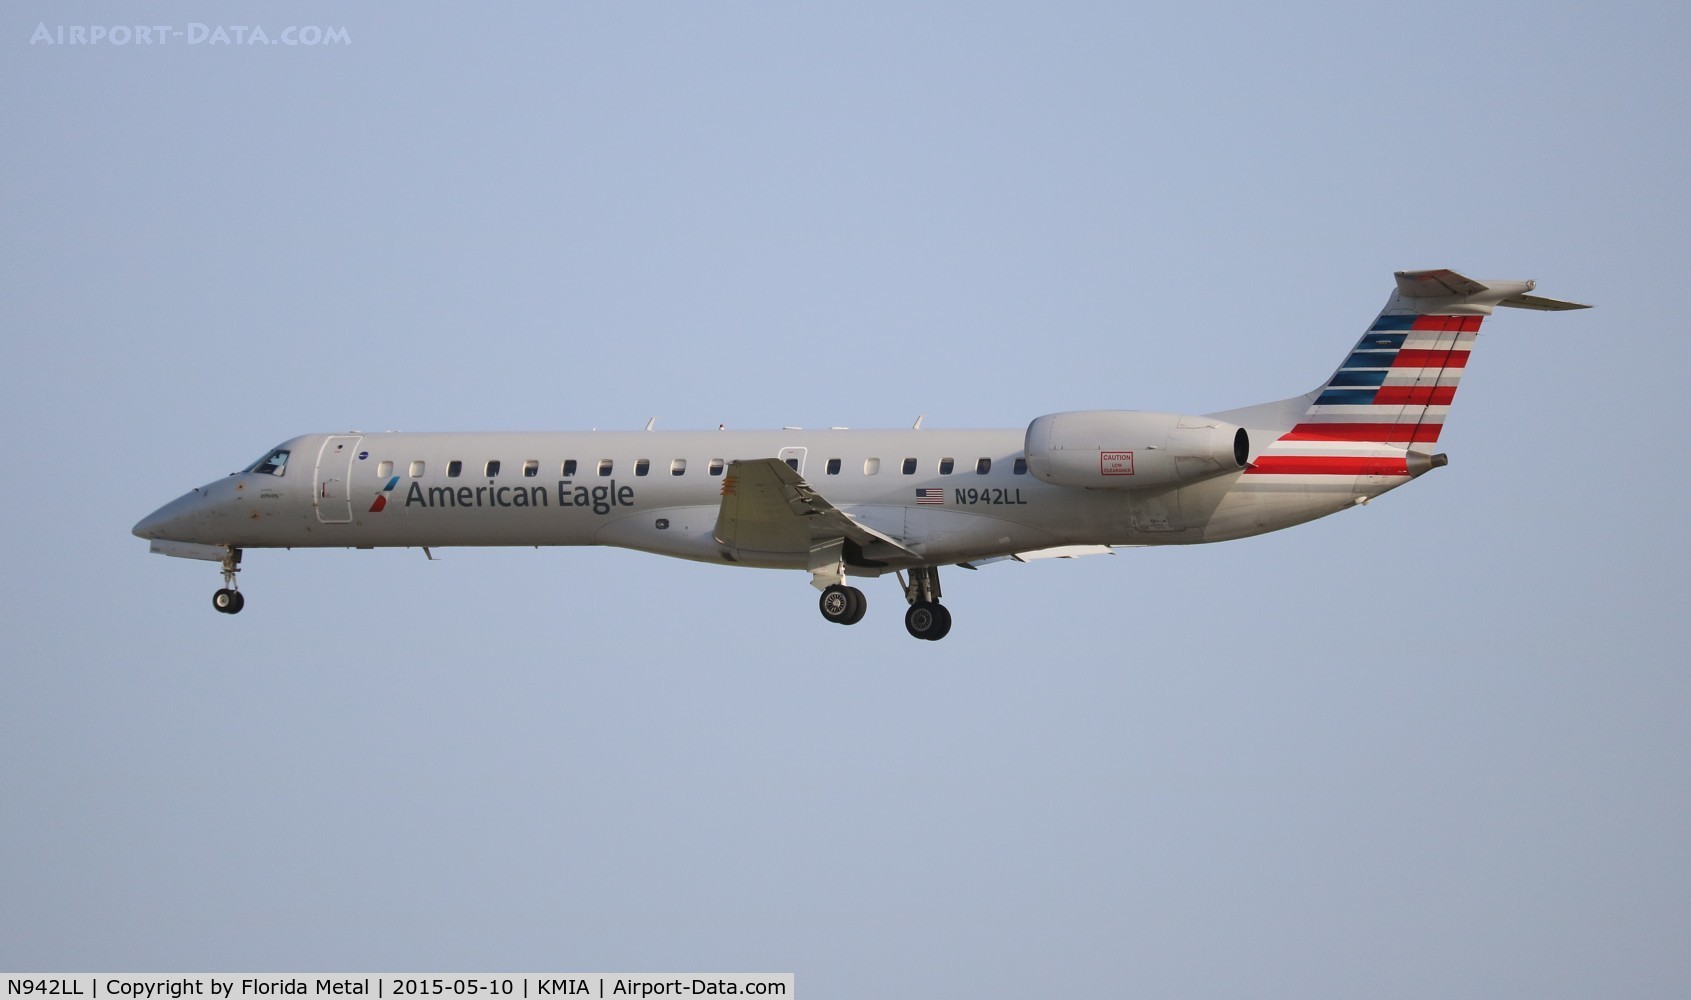 N942LL, 2005 Embraer ERJ-145LR (EMB-145LR) C/N 14500930, American Eagle